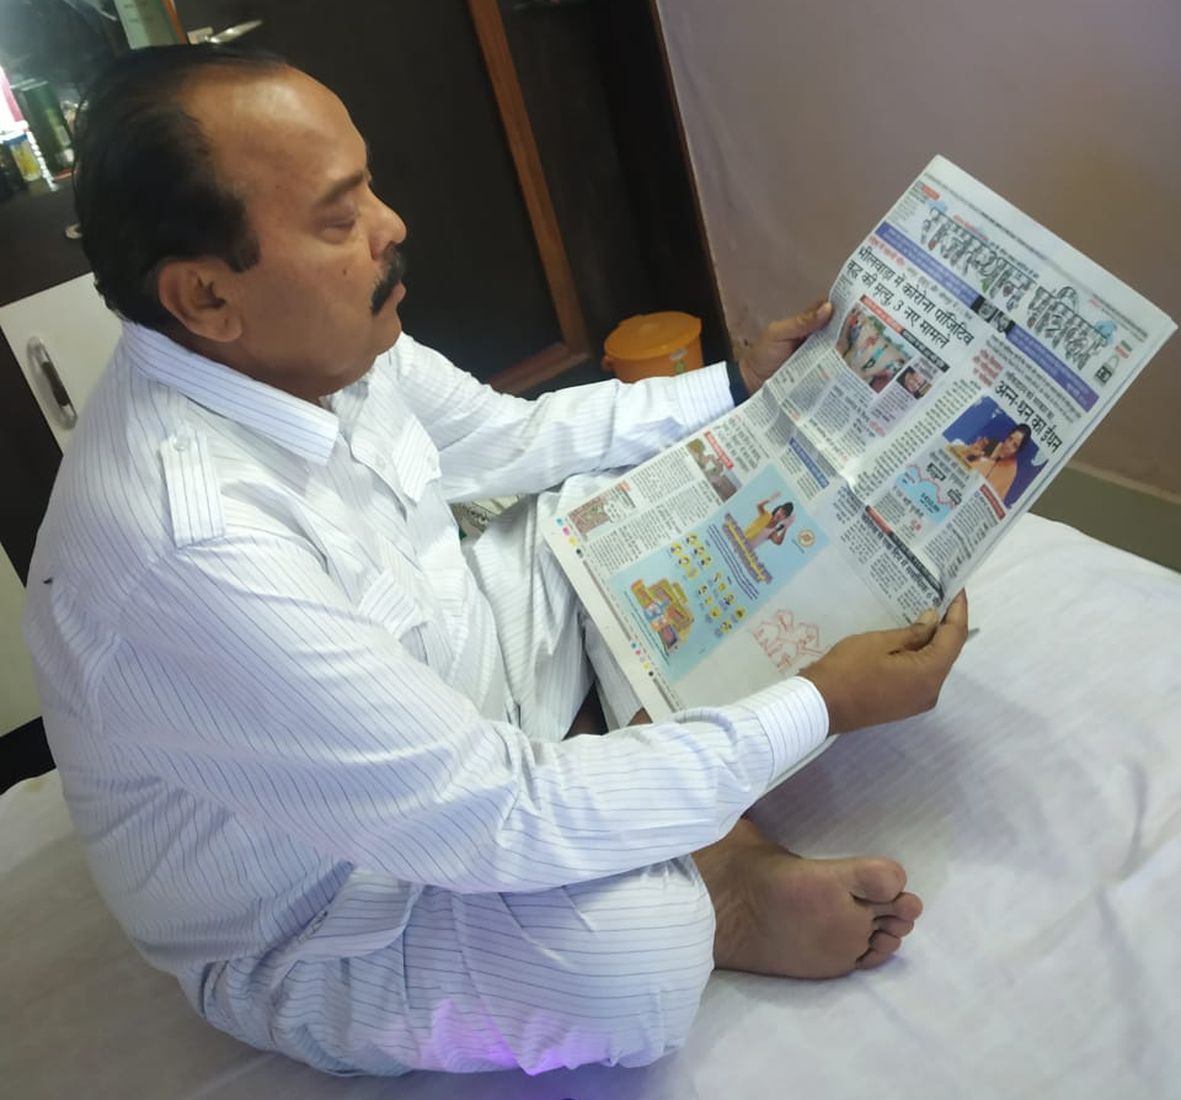 प्रामाणिक खबरों के लिए आज भी जैसलमेर विधायक राजस्थान पत्रिका पर भरोसा